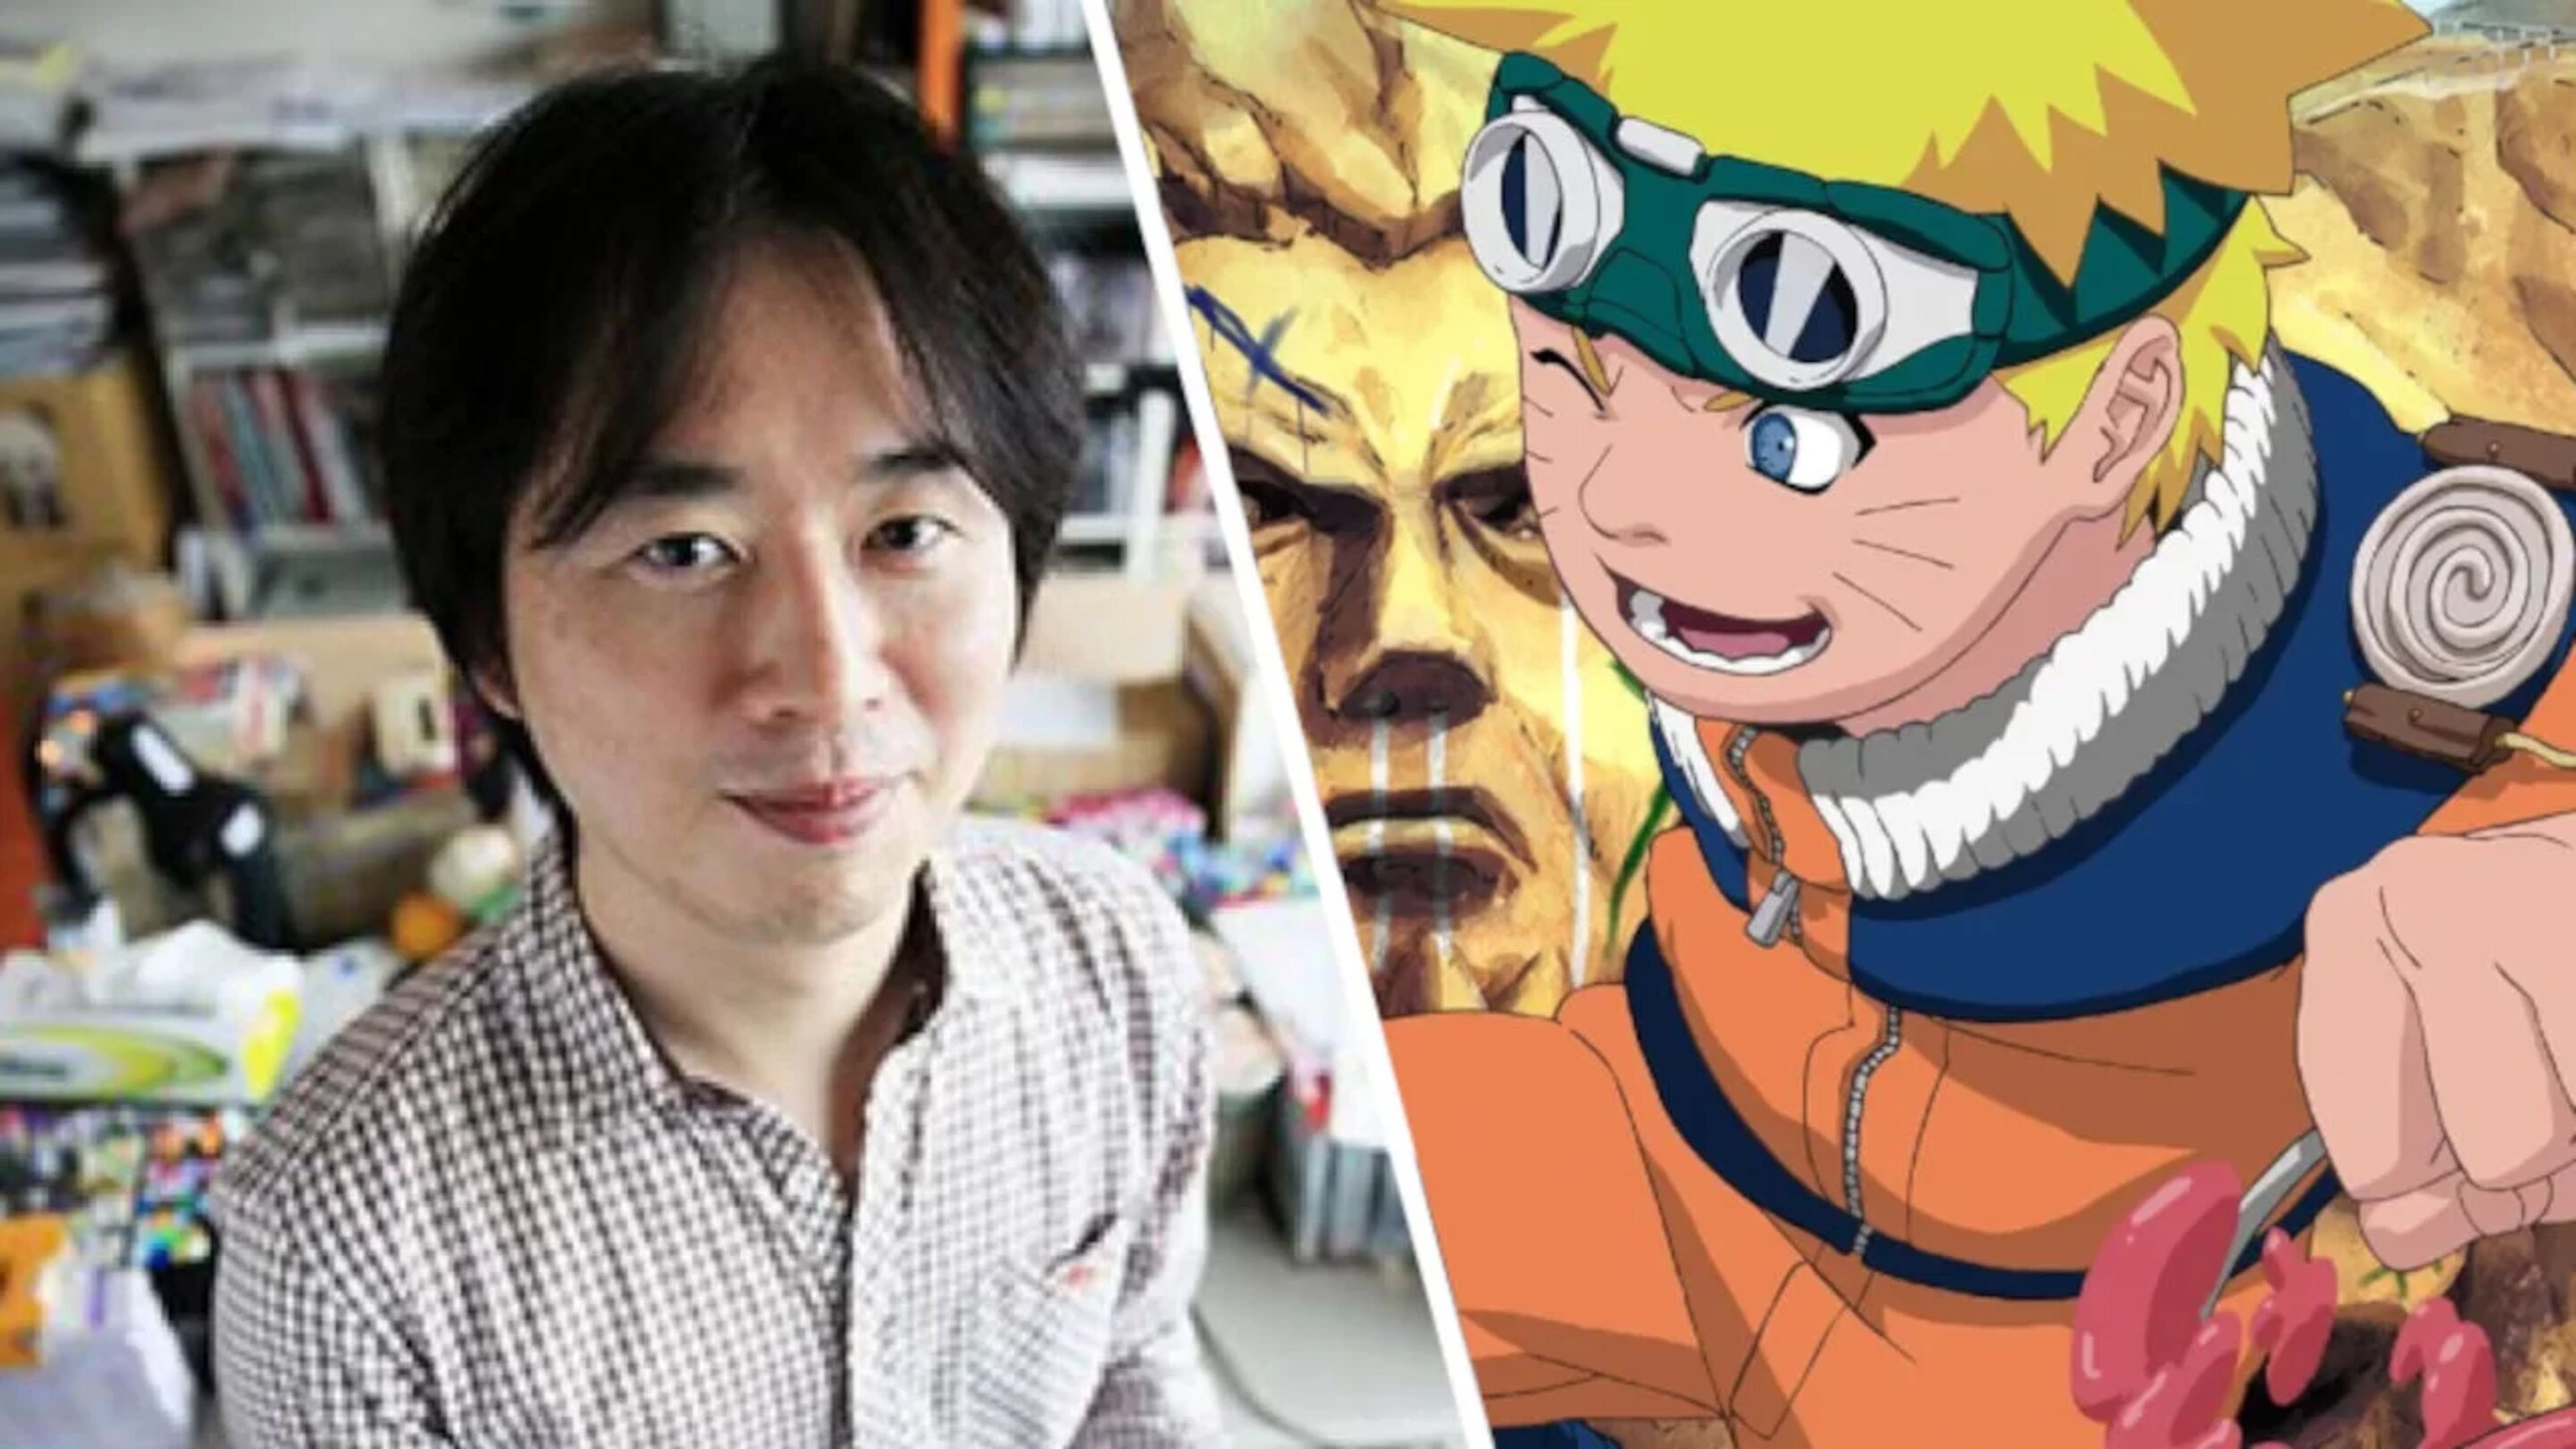 La película de Naruto de imagen real ya está en marcha con Destin Daniel Cretton, el director deseado por Masashi Kishimoto